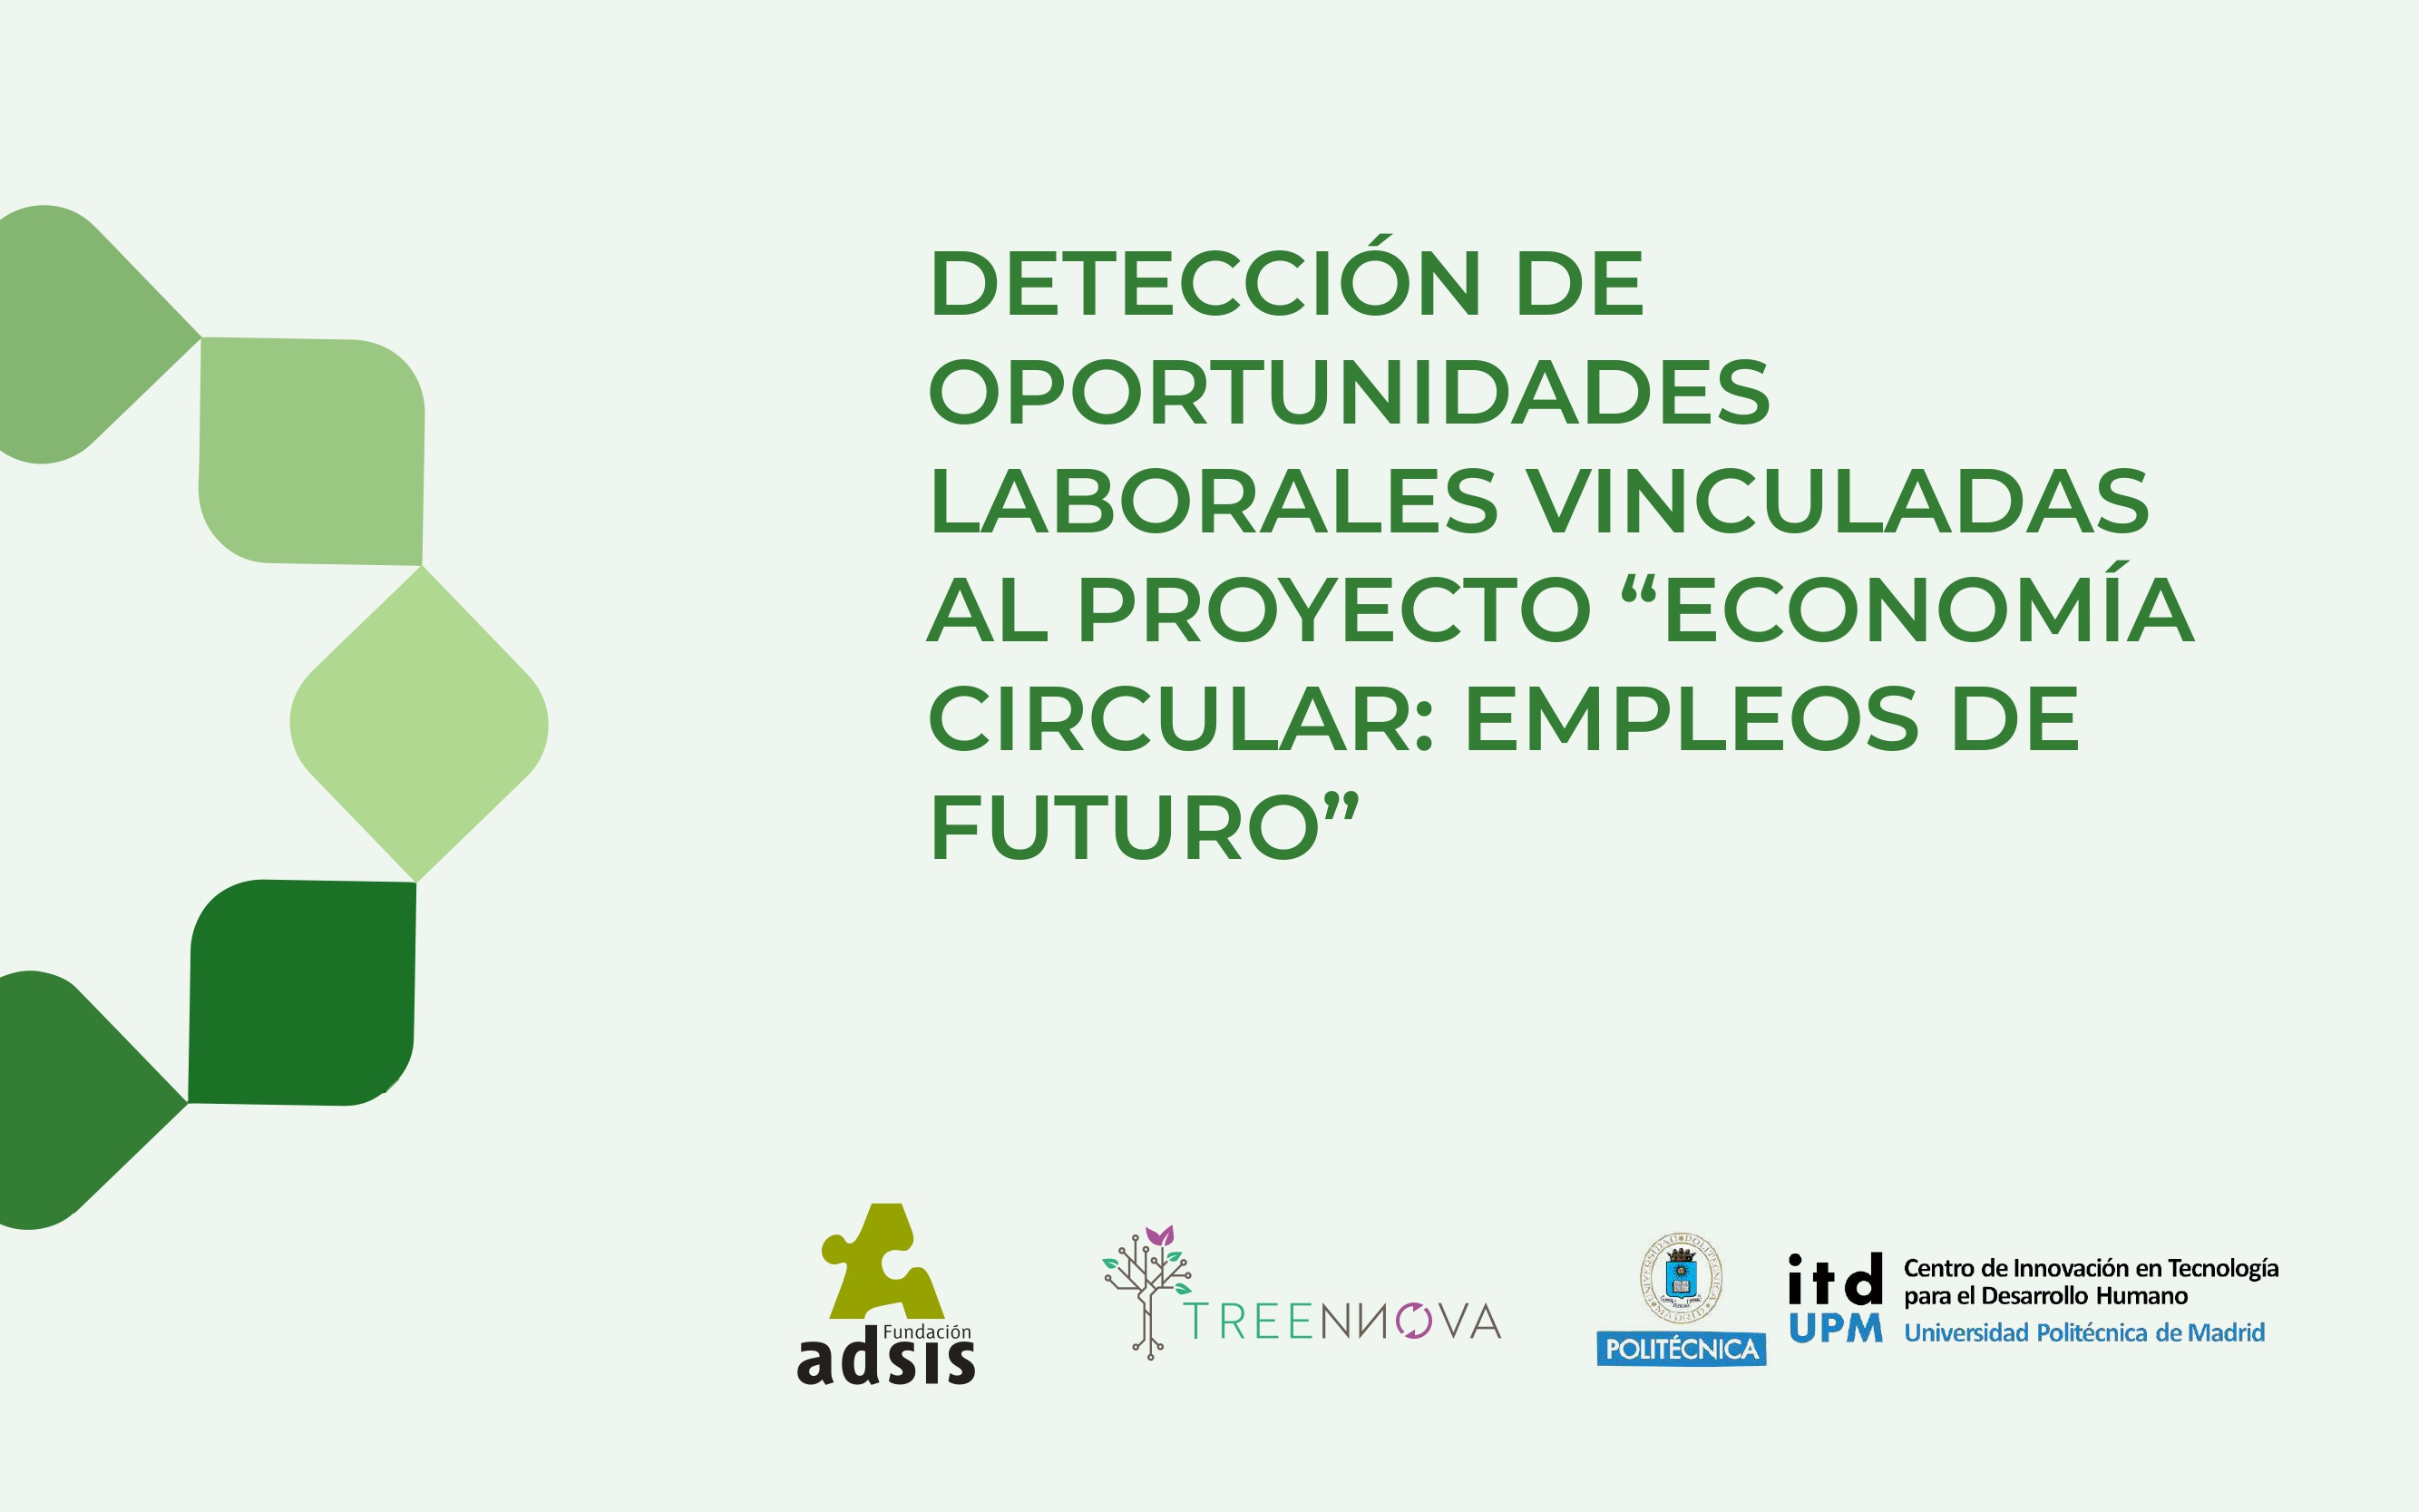 Detección de oportunidades laborales vinculadas al proyecto "Economía circular: empleos de futuro" de Fundación Adsis y la UPM